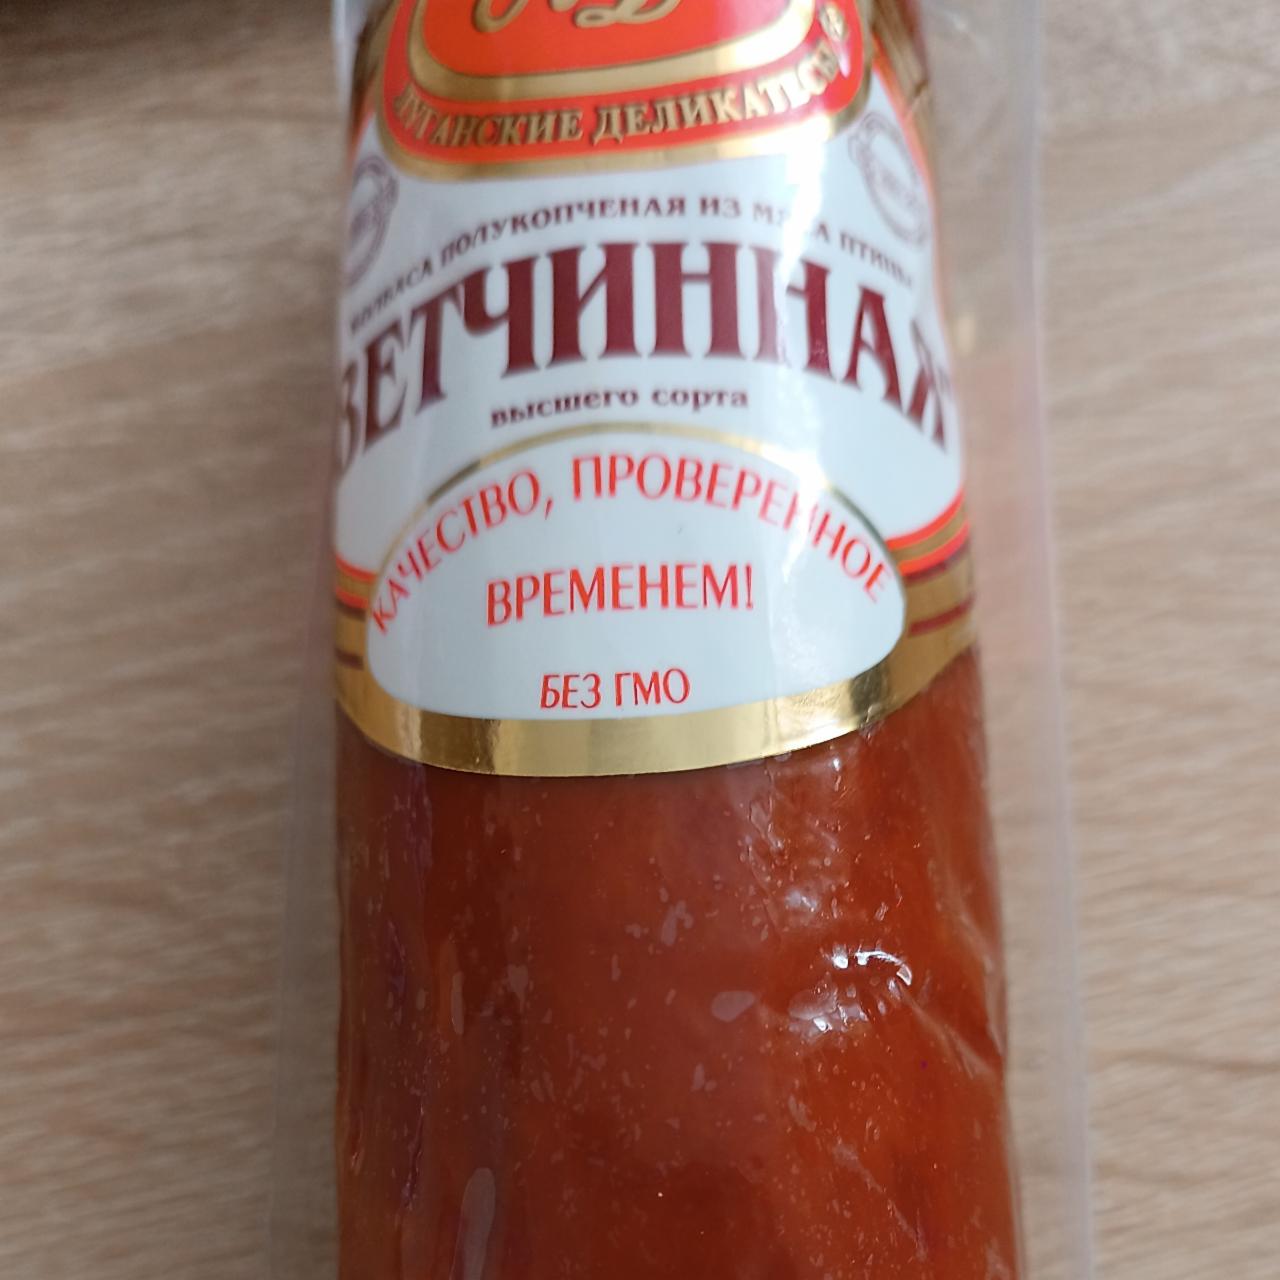 Фото - Колбаса полукопченая из мяса птицы Ветчинная Луганские деликатесы